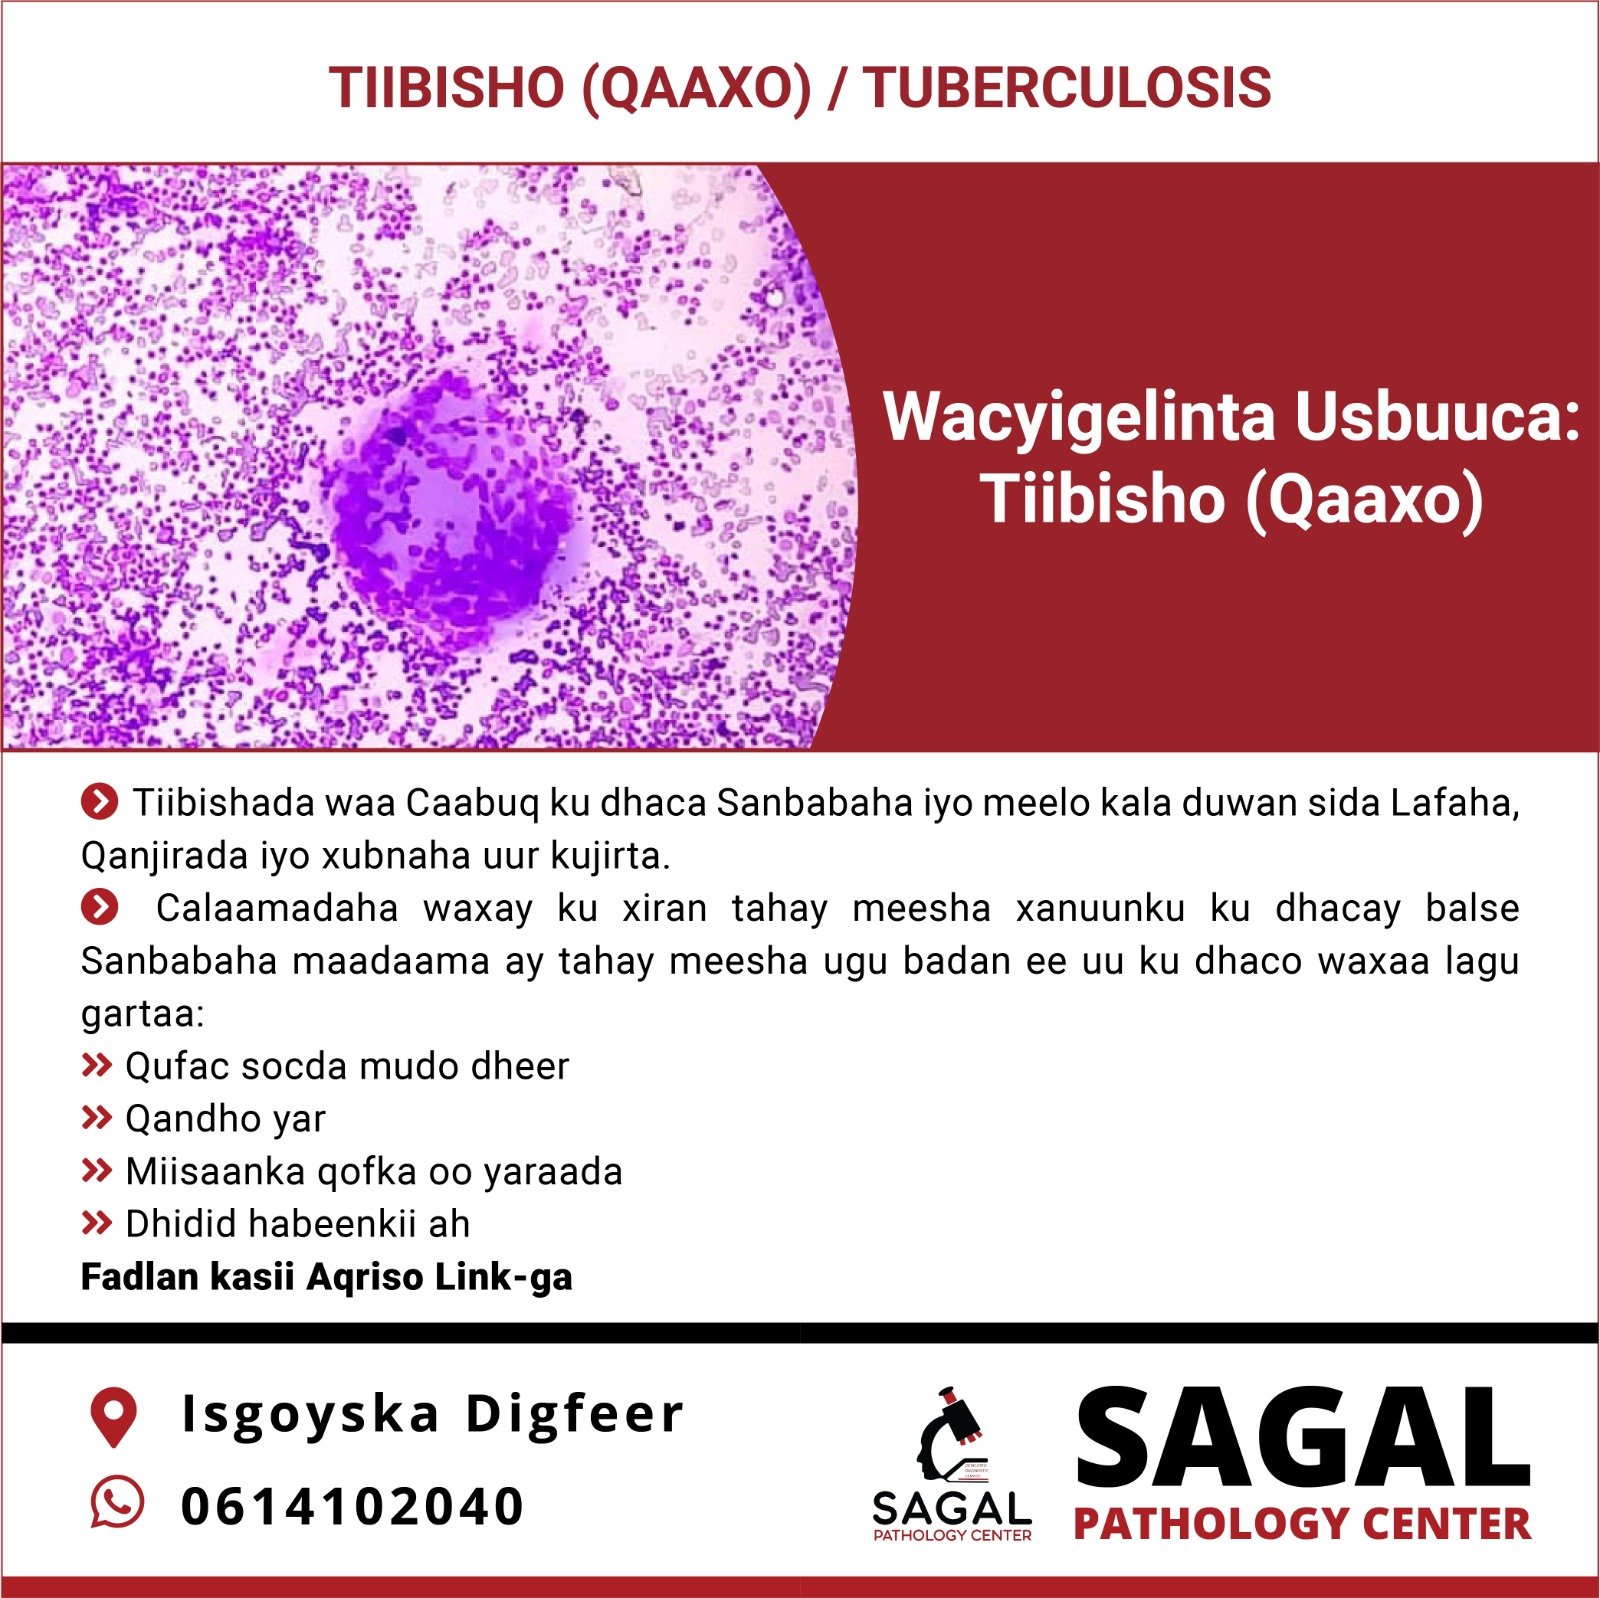 Tiibisho (Qaaxo): Tuberculosis